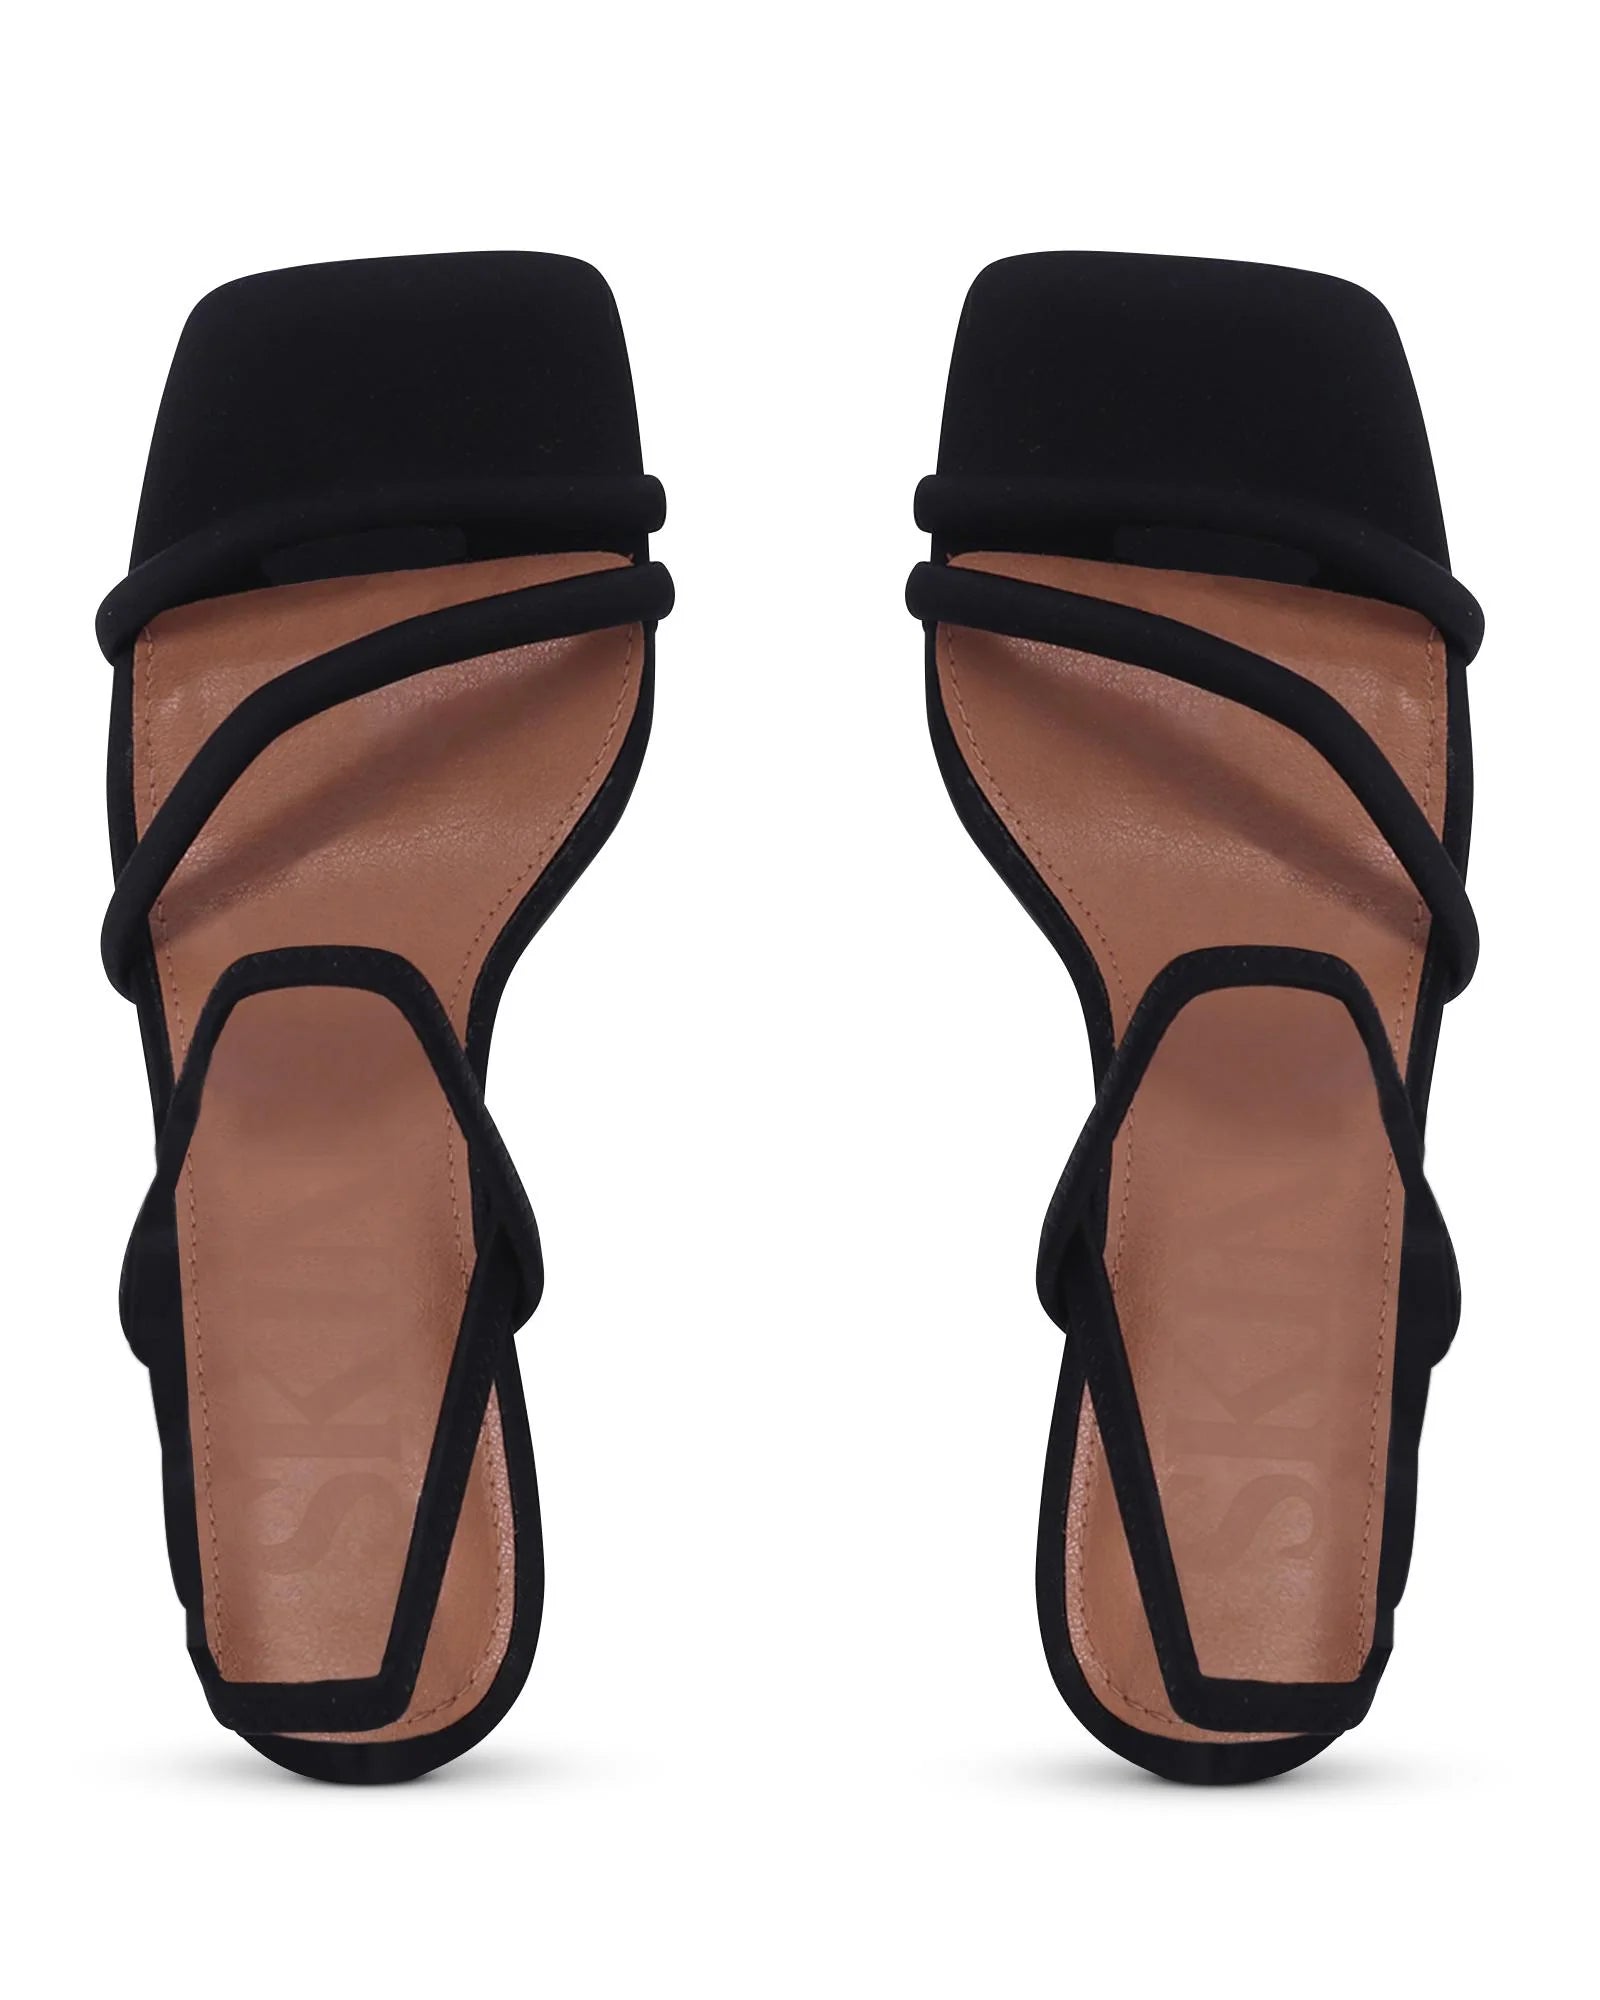 COLOMBO STRAPPY BLOCK HEEL - SKIN FOOTWEAR - 36, 37, 38, 39, 40, 41, BF, BLACK, block heel, NUDE, womens footwear - Stomp Shoes Darwin